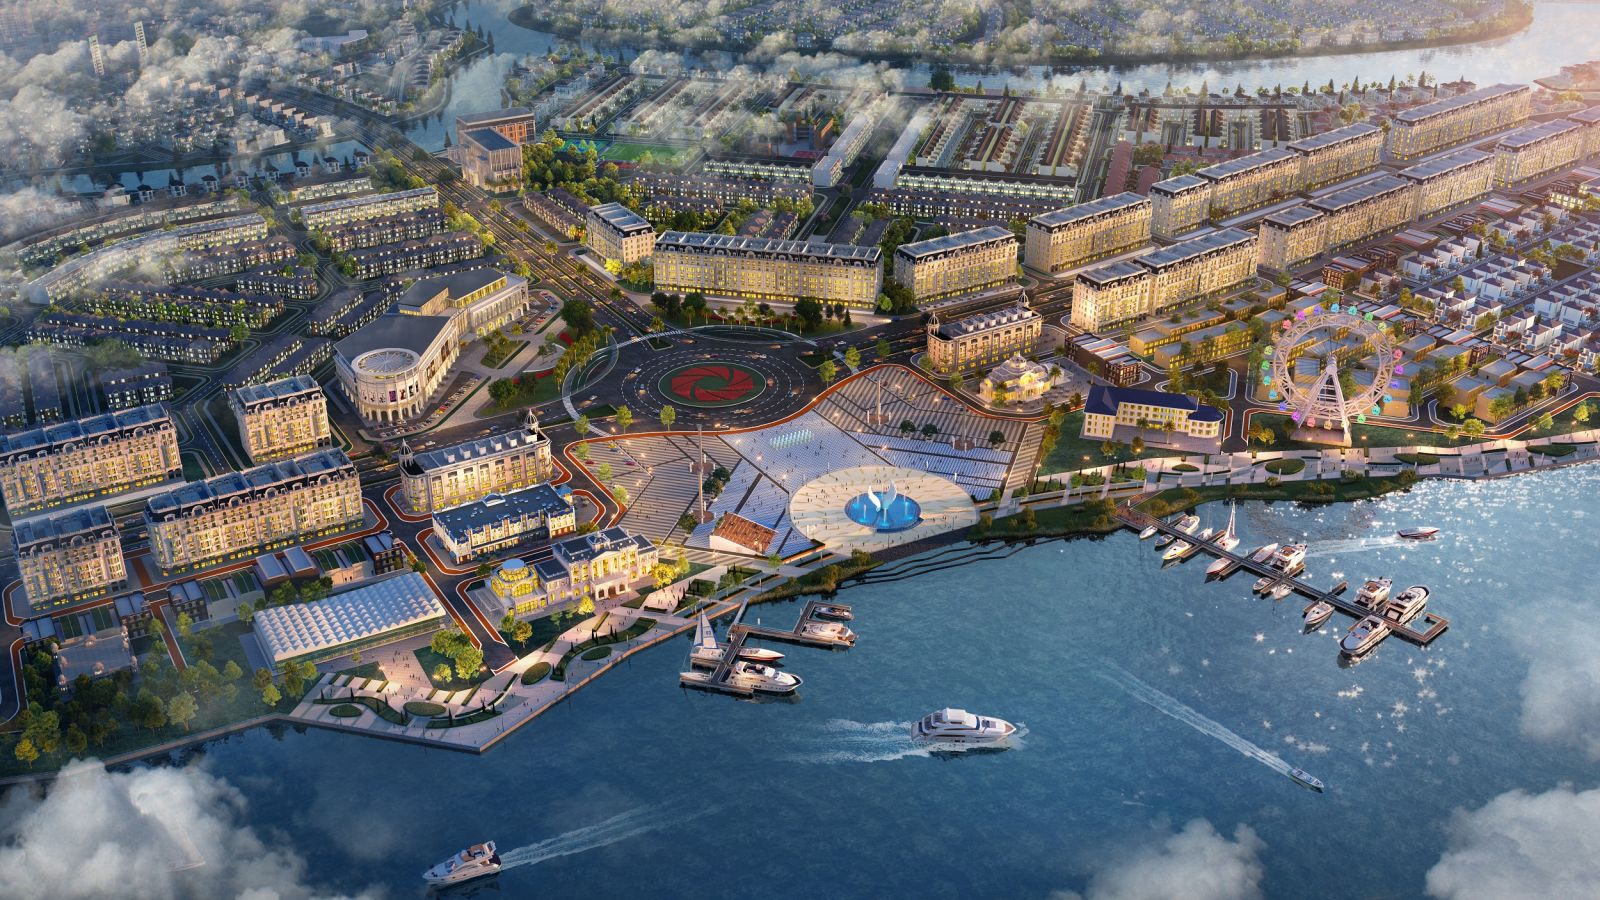 Tổ hợp quảng trường - bến du thuyền Aqua Marina kiến tạo bản sắc và gia tăng giá trị cho Aqua City